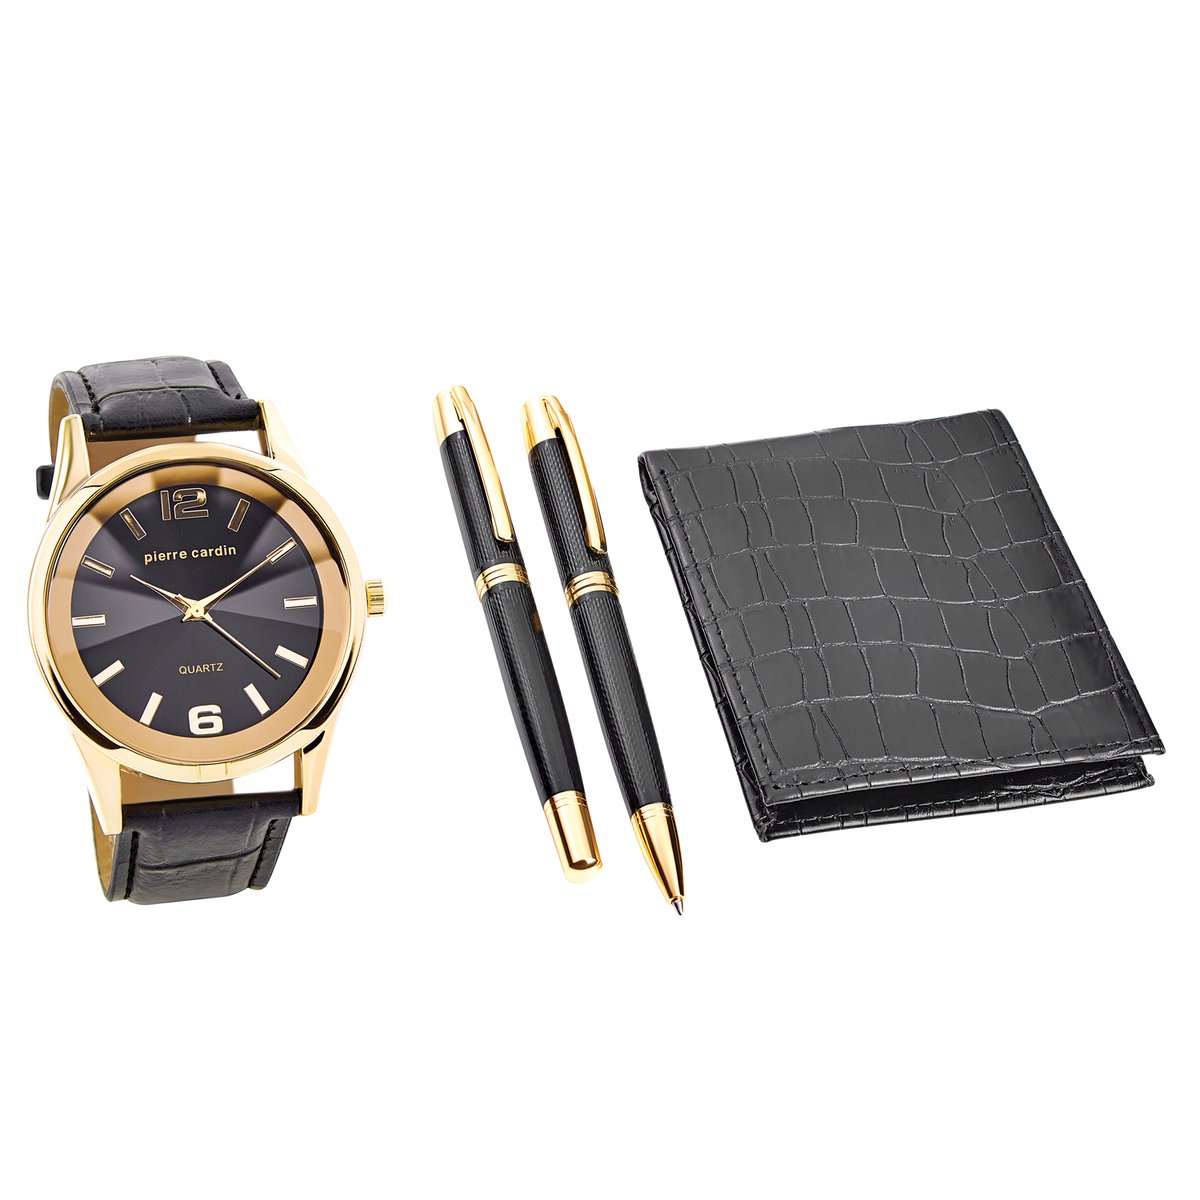 Pierre Cardin Gift Set Watch Wallet Pen PCX7870EMI